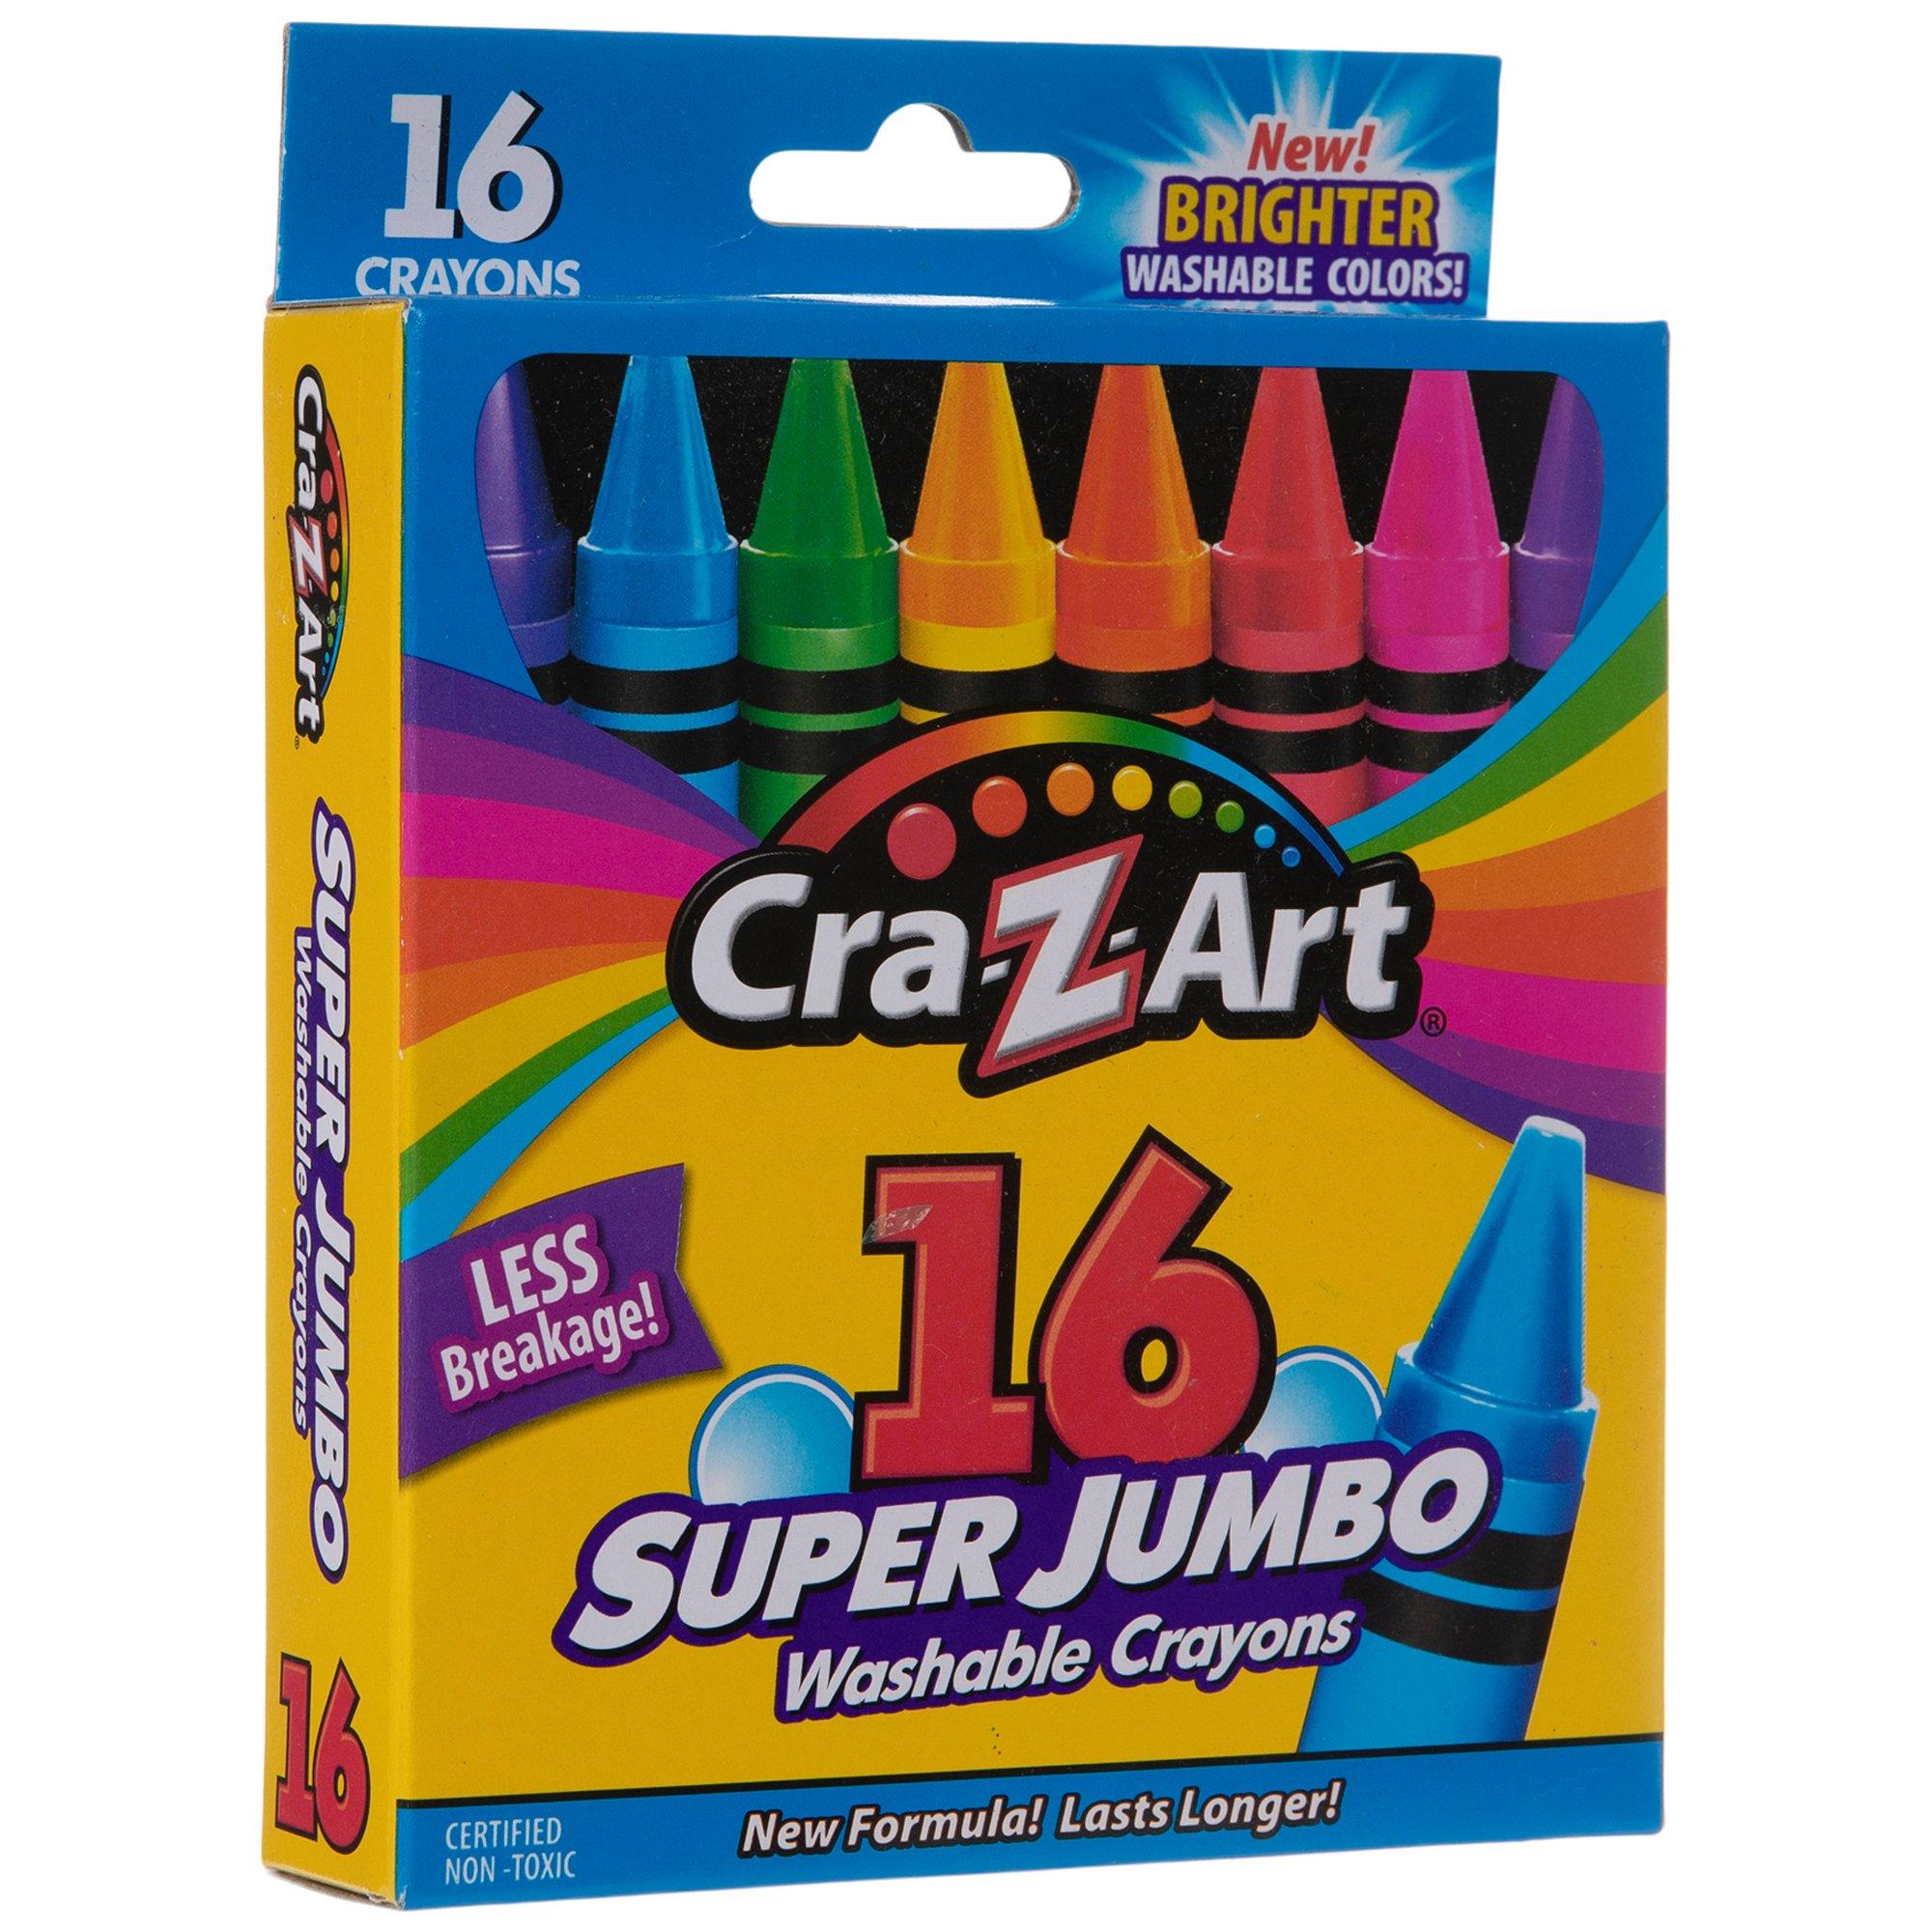 Jumbo Crayola Pens